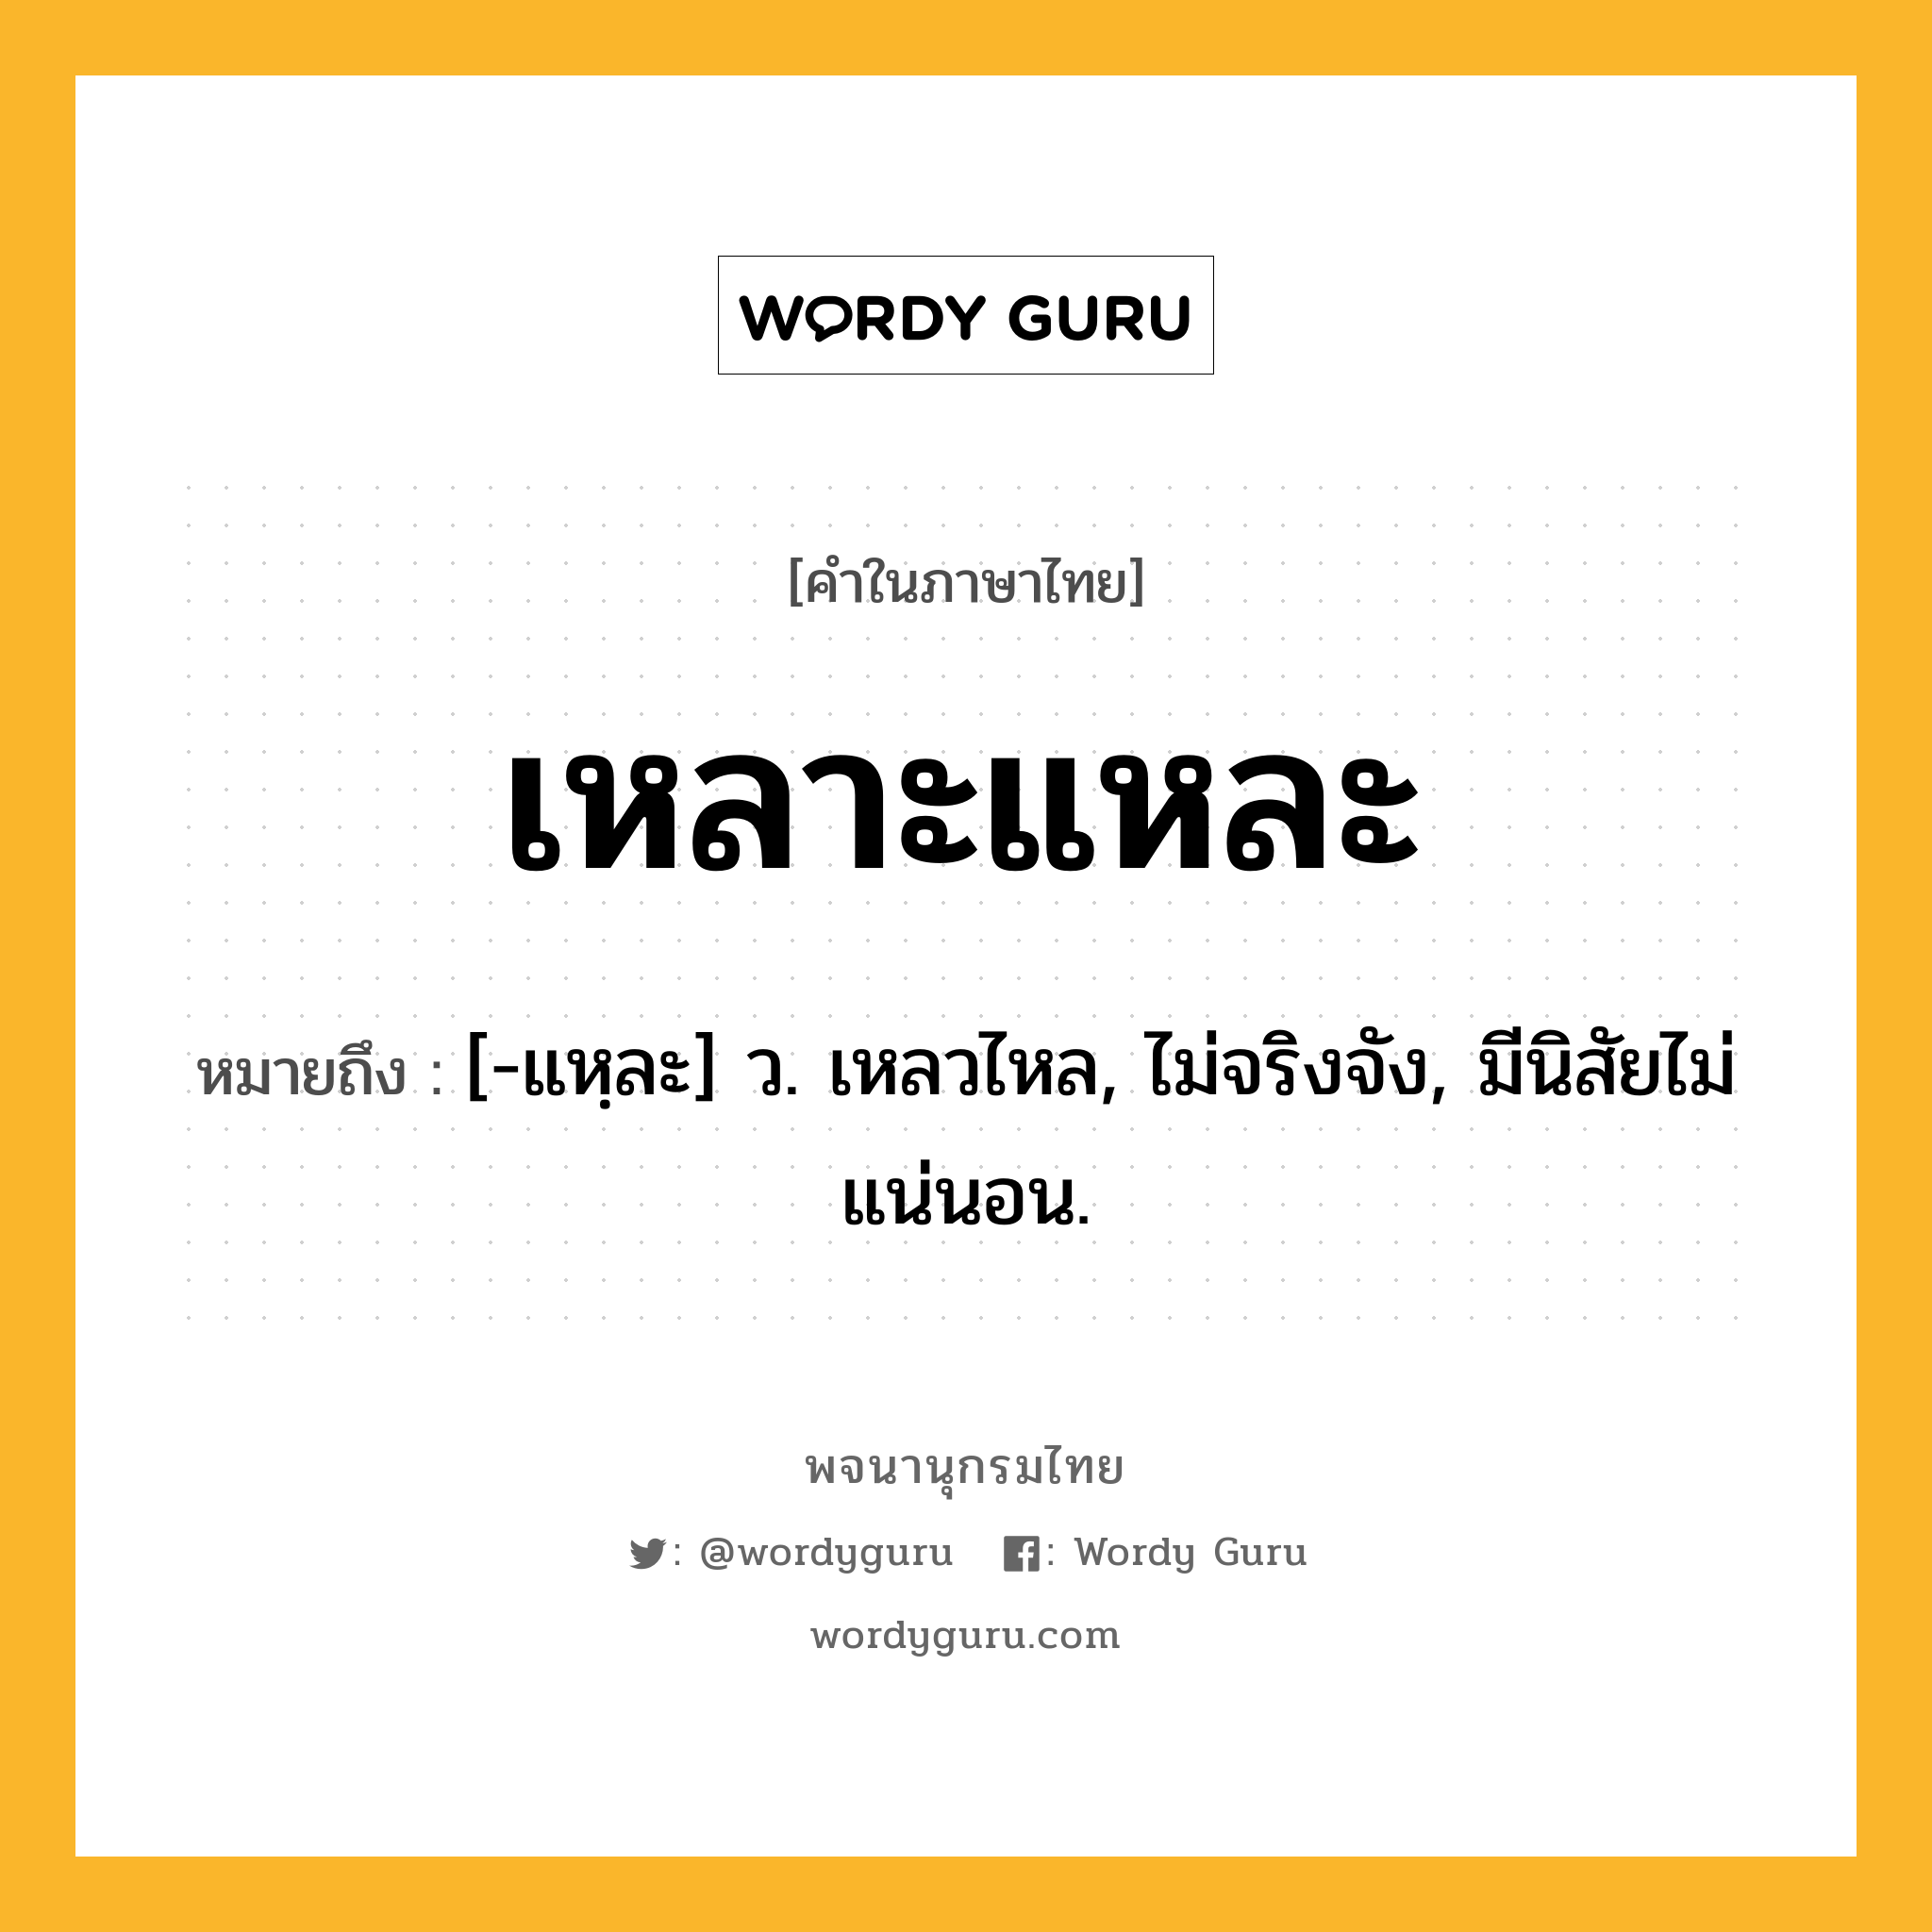 เหลาะแหละ หมายถึงอะไร?, คำในภาษาไทย เหลาะแหละ หมายถึง [-แหฺละ] ว. เหลวไหล, ไม่จริงจัง, มีนิสัยไม่แน่นอน.